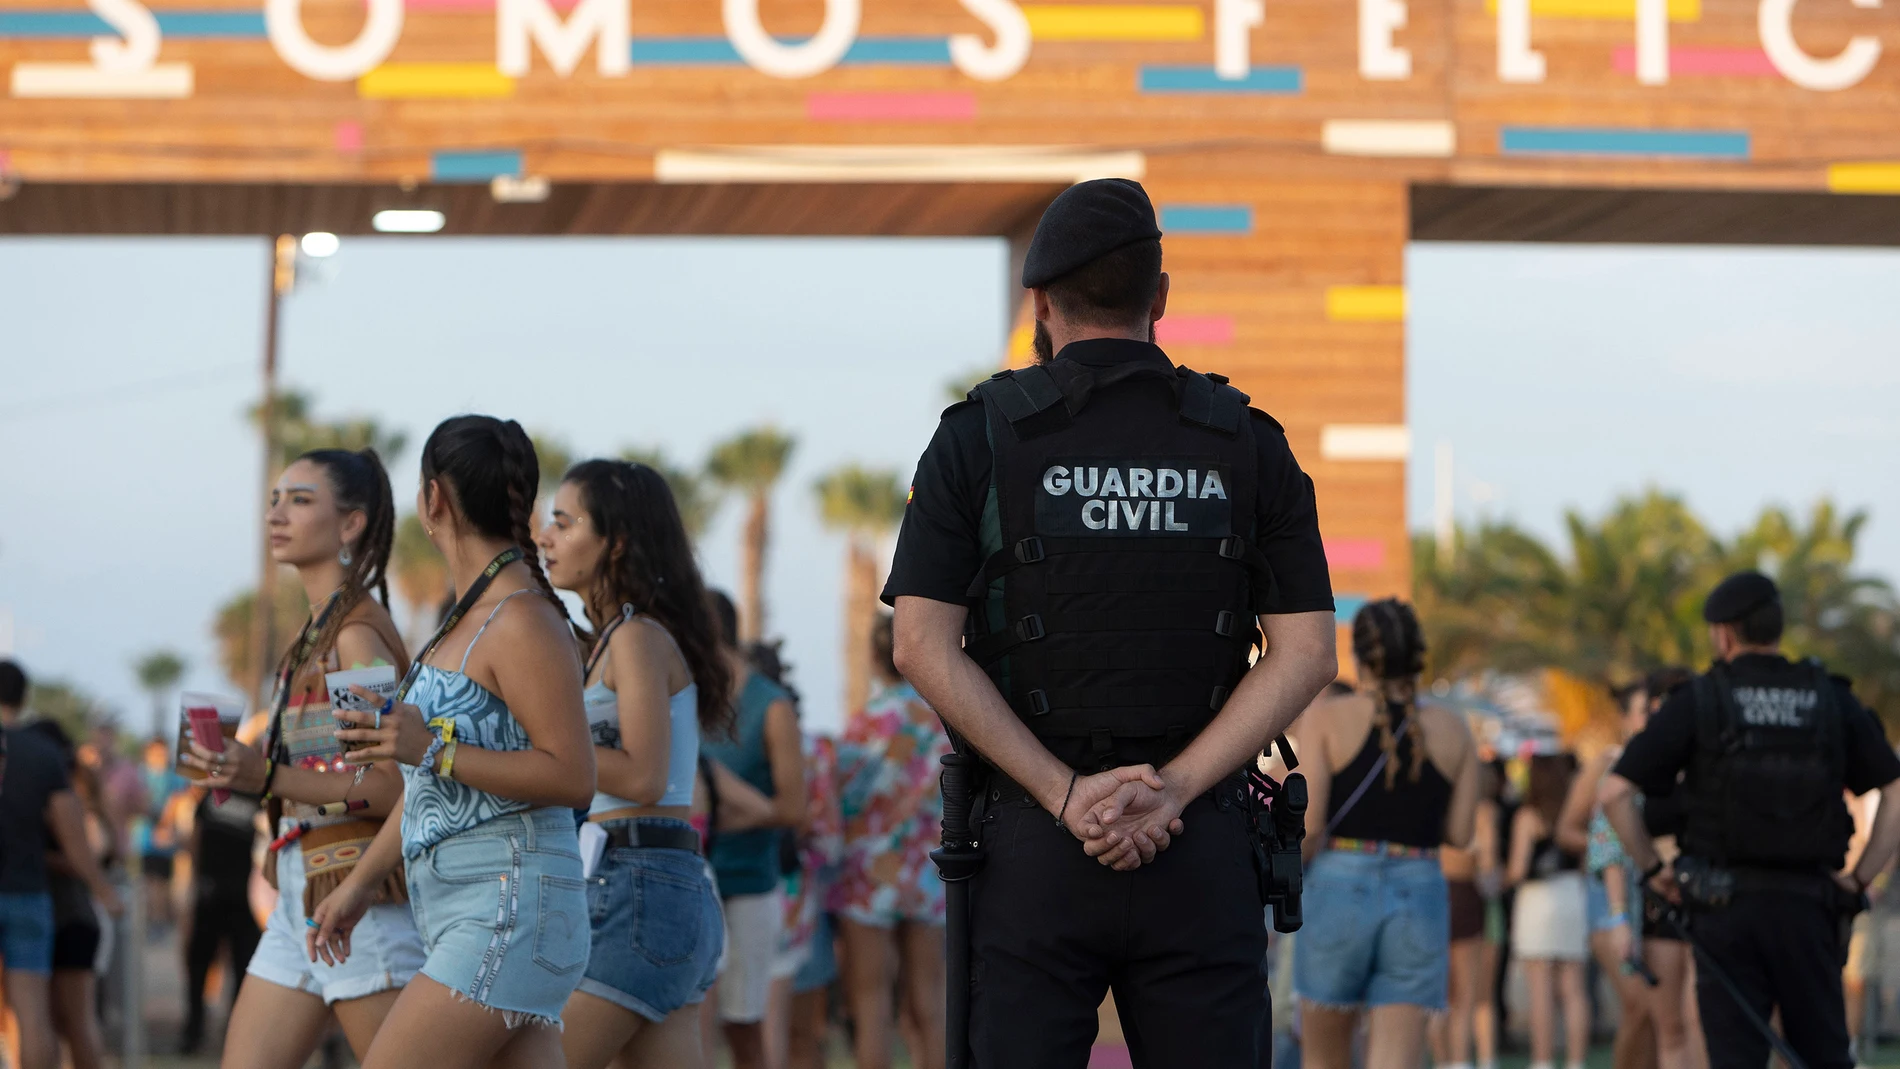 La Guardia Civil ha incrementado la vigilancia tras las últimas denuncias por pinchazos en fiestas y festivales. En la imagen, el Festival Arenal Sound, en Burriana (Castellón).